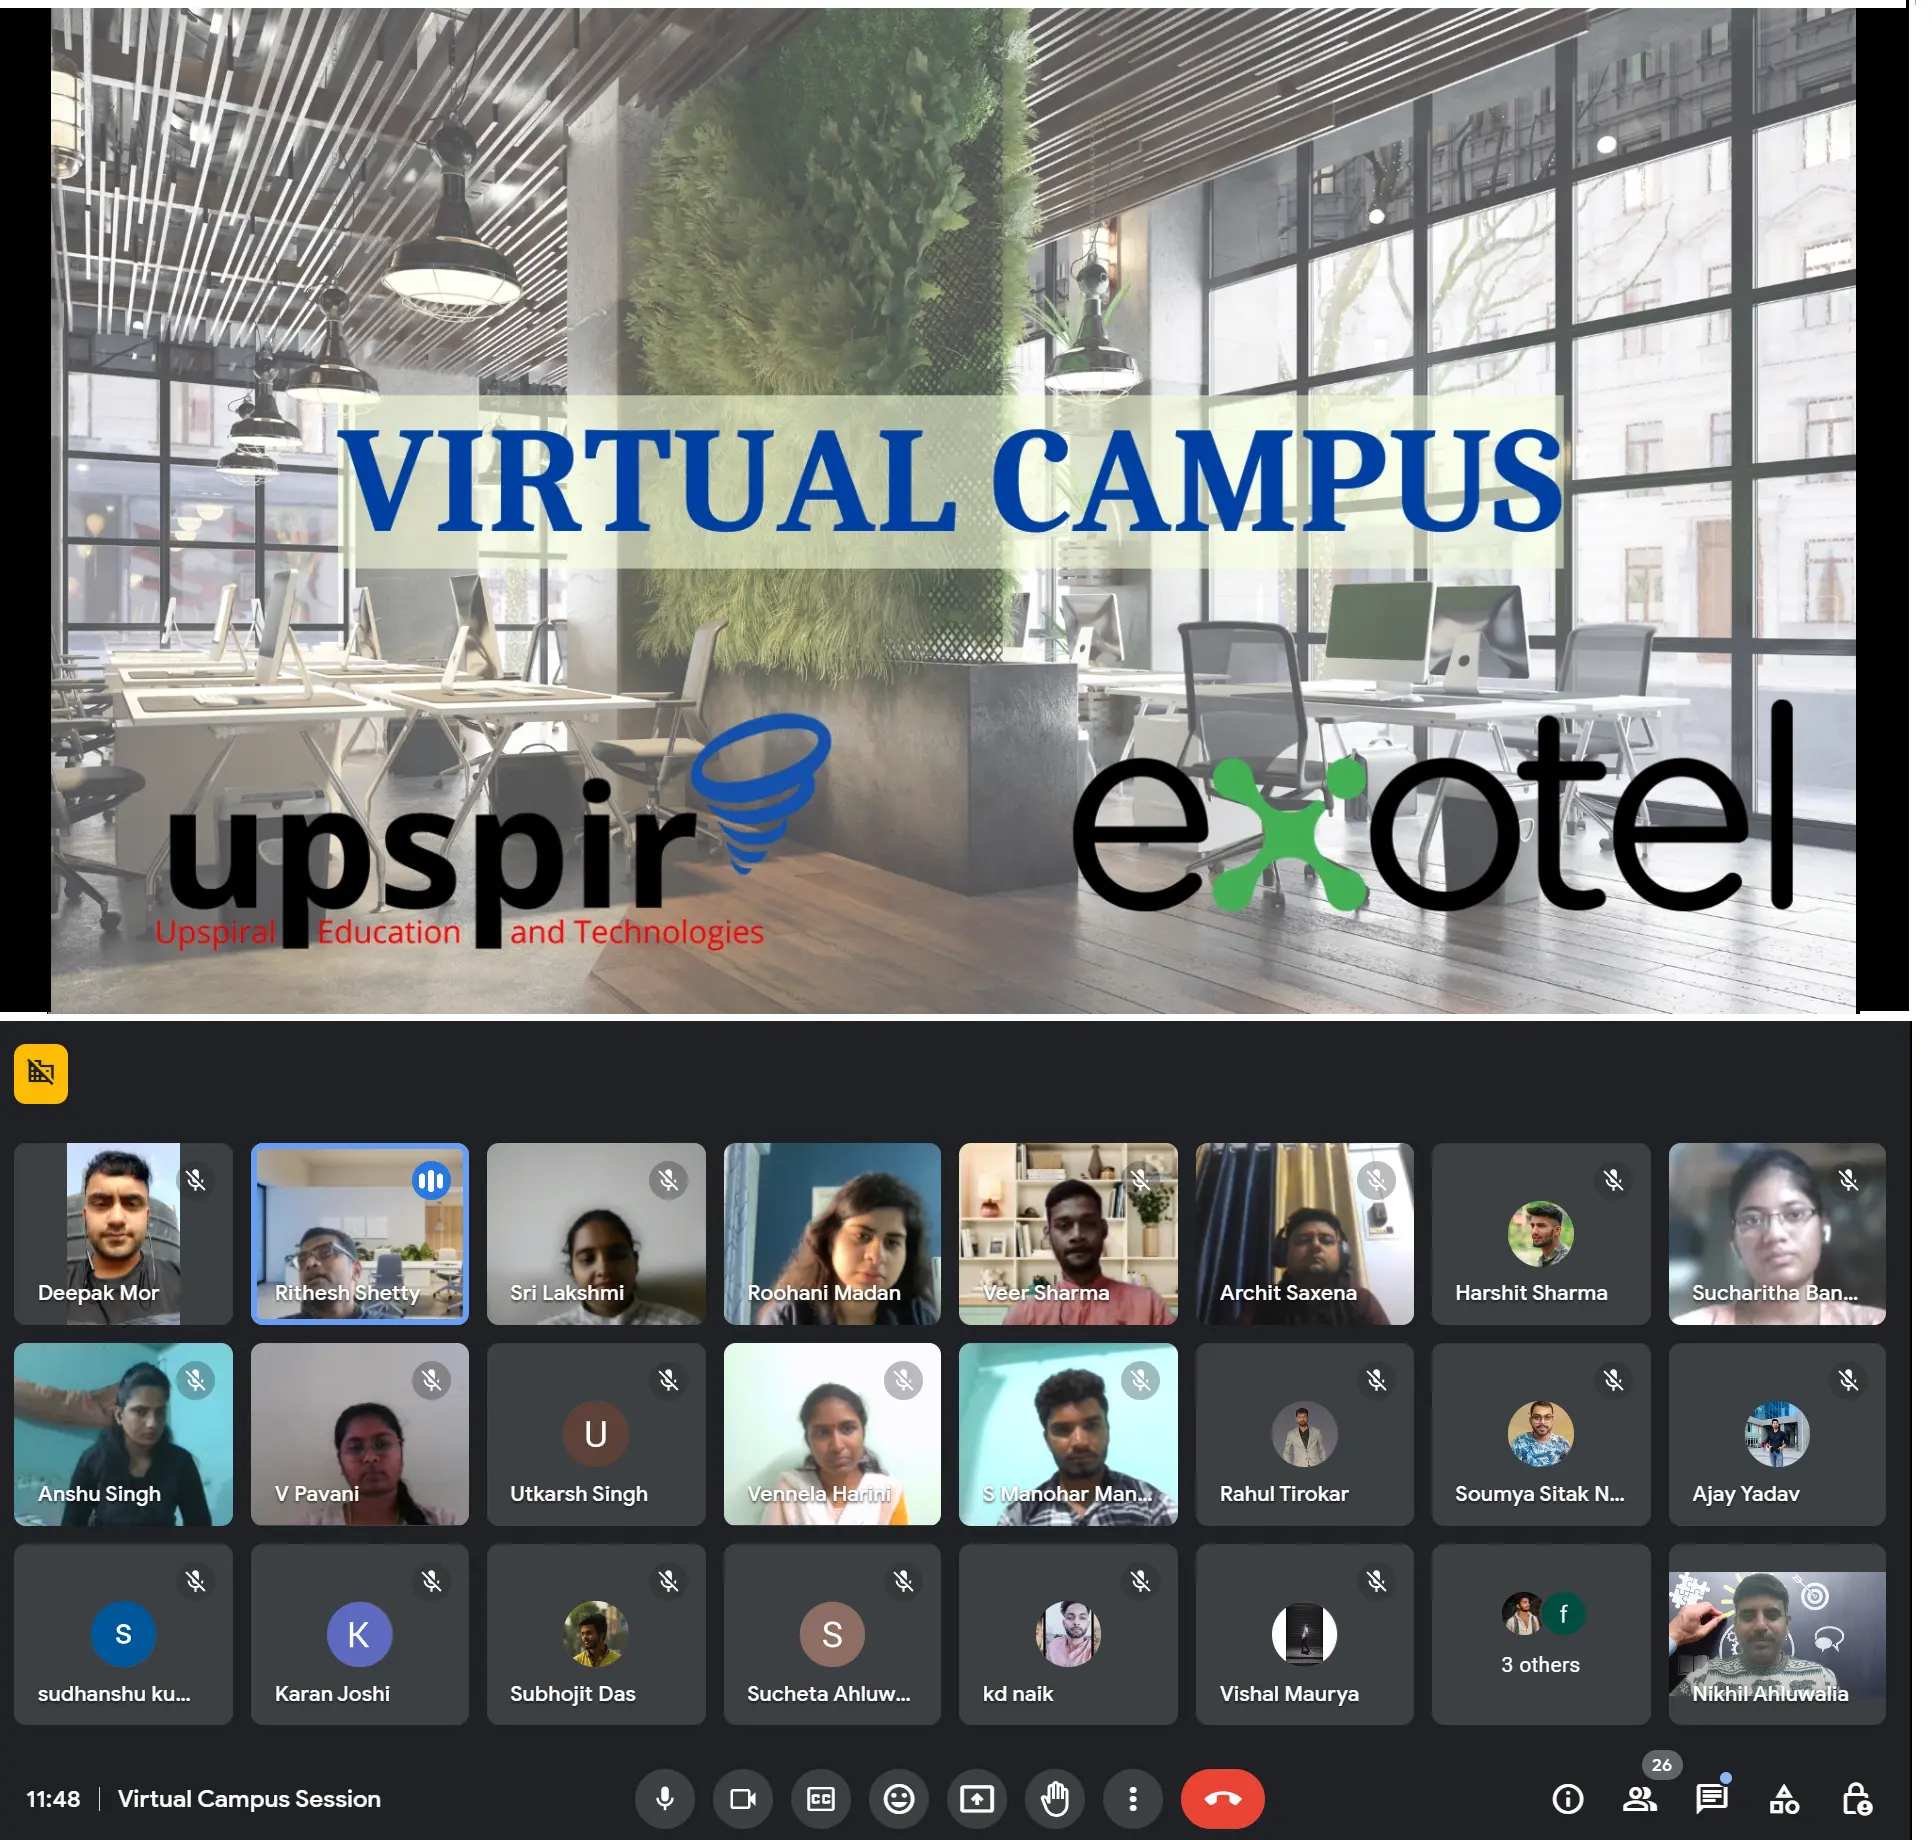 Virtual Campus Session